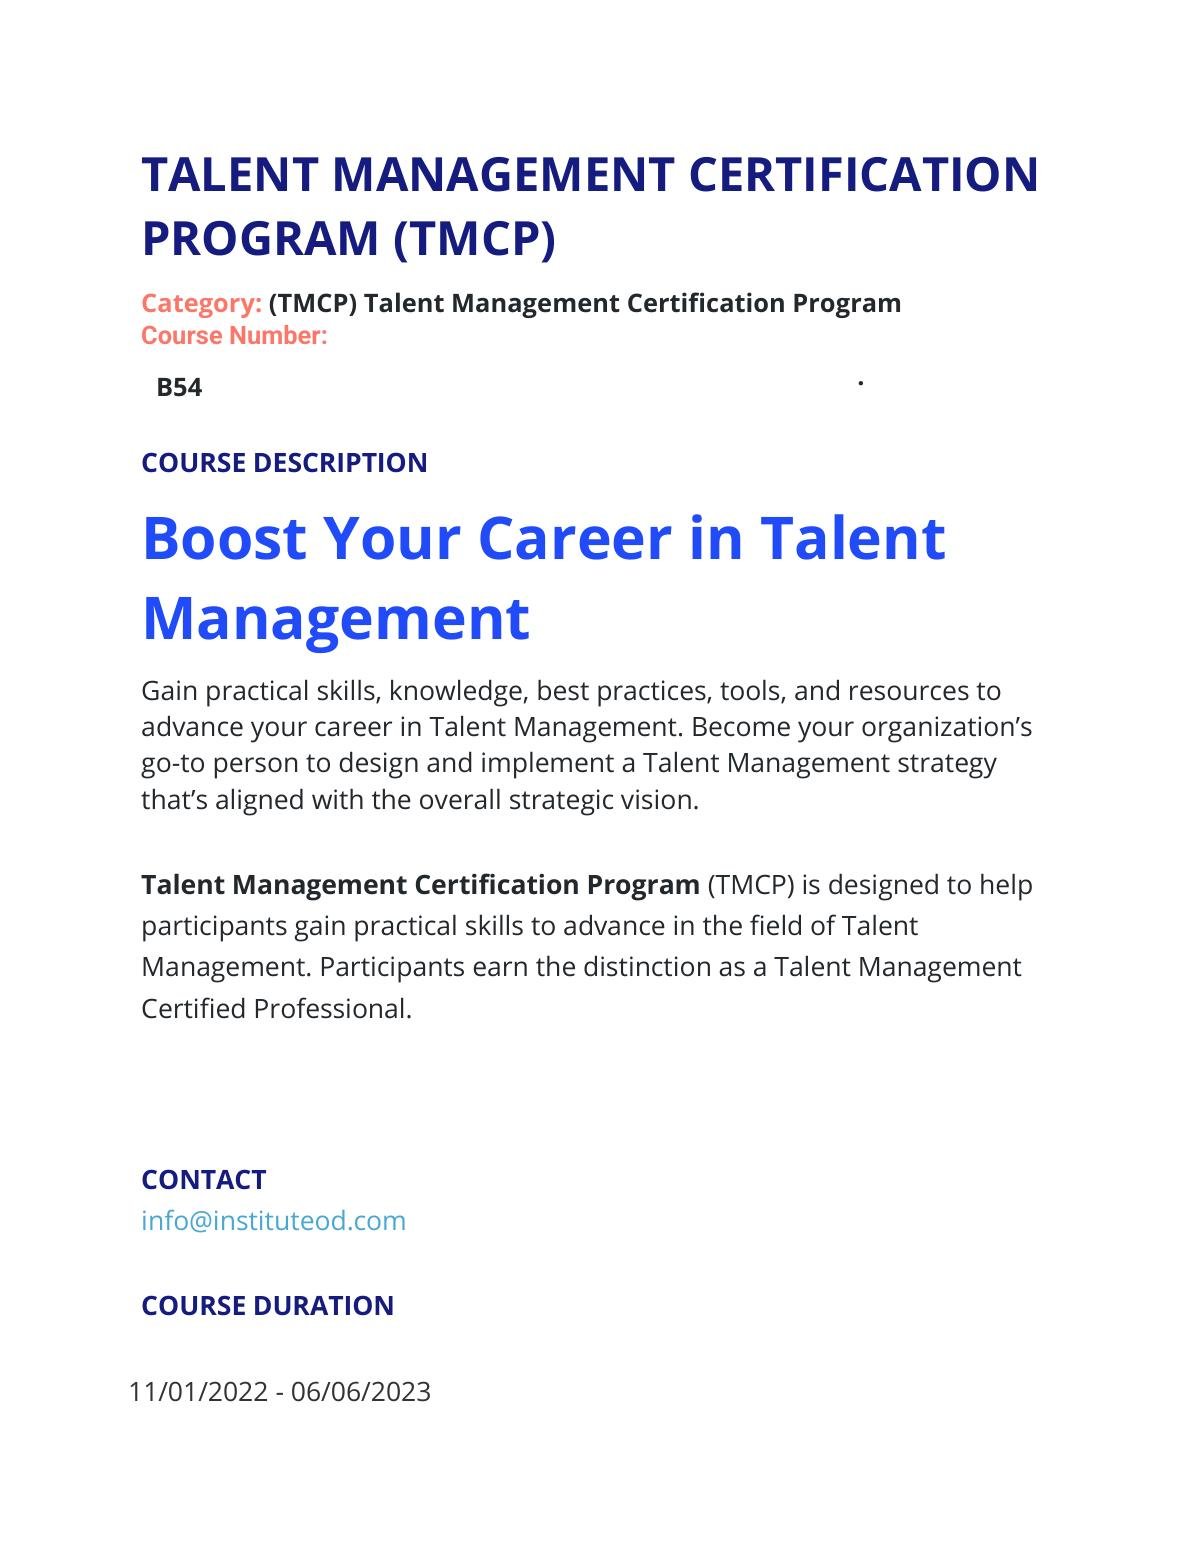 TALENT MANAGEMENT CERTIFICATION PROGRAM (TMCP)